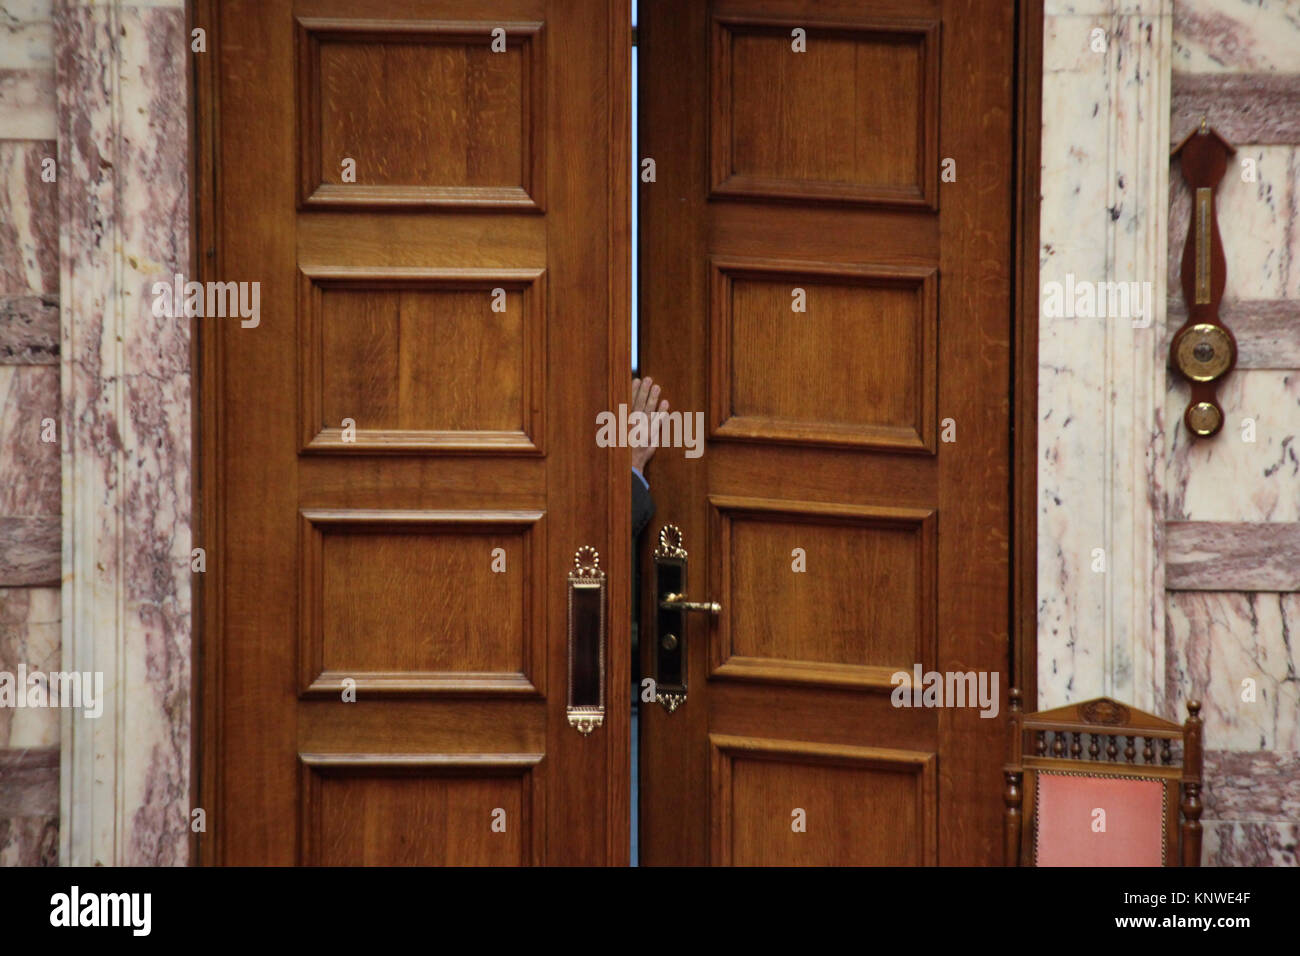 Halb geöffneter Tür durch einen Mann, der nur widerwillig, die versuchen, den Raum zu betreten. Im griechischen Parlament in Athen, Griechenland. Stockfoto